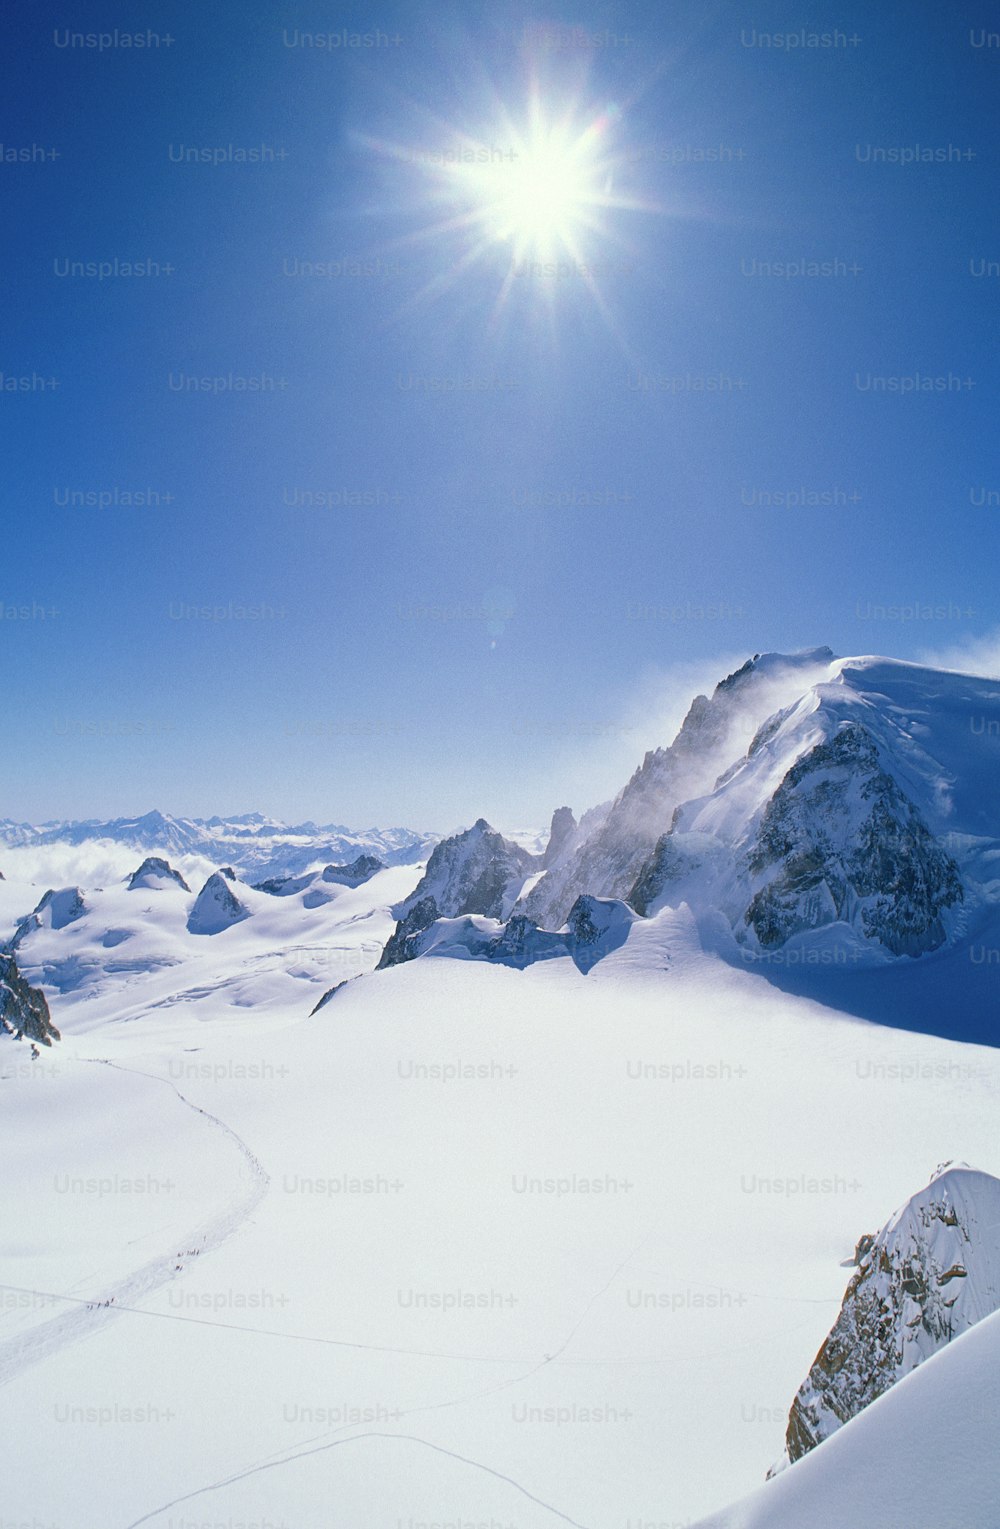 eine Person, die auf Skiern auf einer schneebedeckten Oberfläche fährt